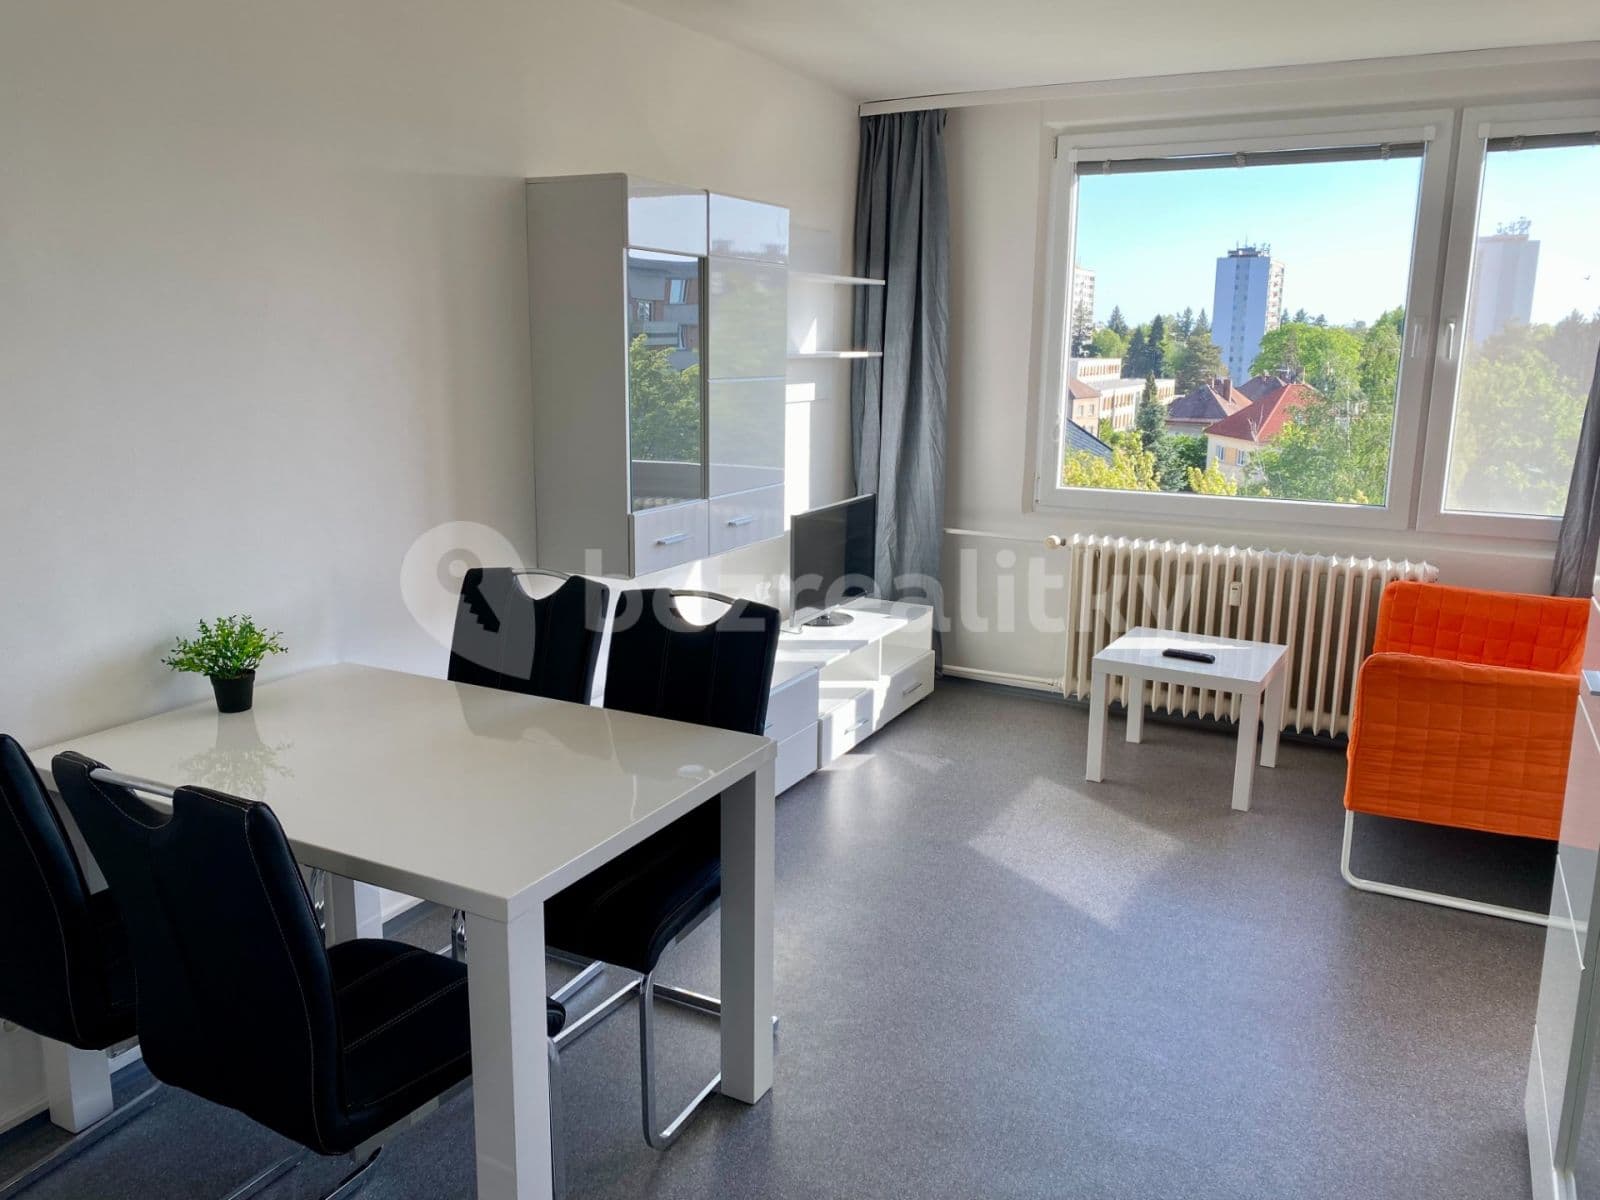 1 bedroom with open-plan kitchen flat to rent, 35 m², Veverkova, Hradec Králové, Královéhradecký Region